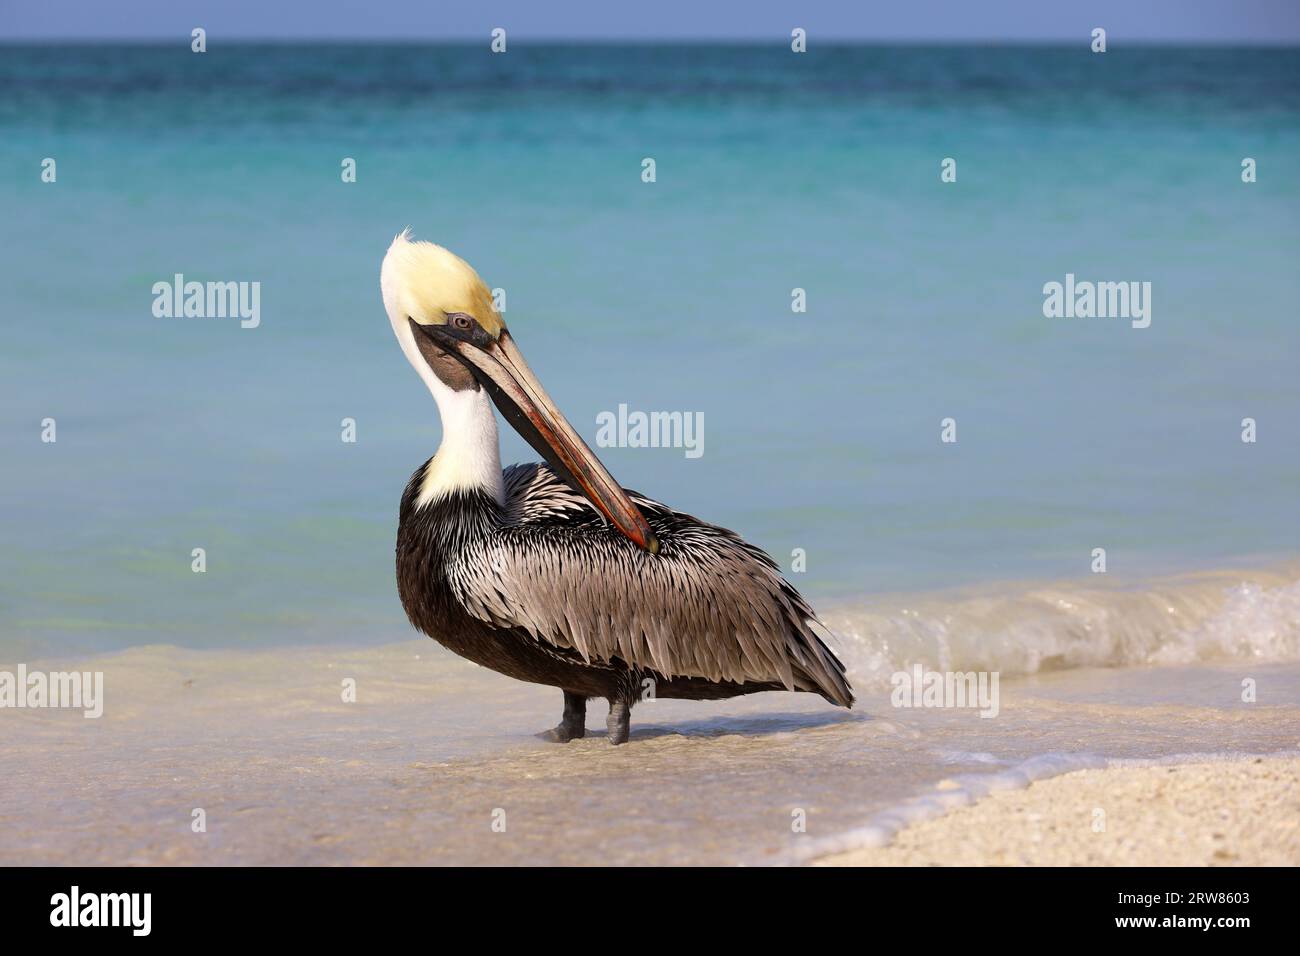 Pelican reposant sur le sable de la plage de l'océan Atlantique. Oiseau sauvage sur fond de vagues bleues Banque D'Images